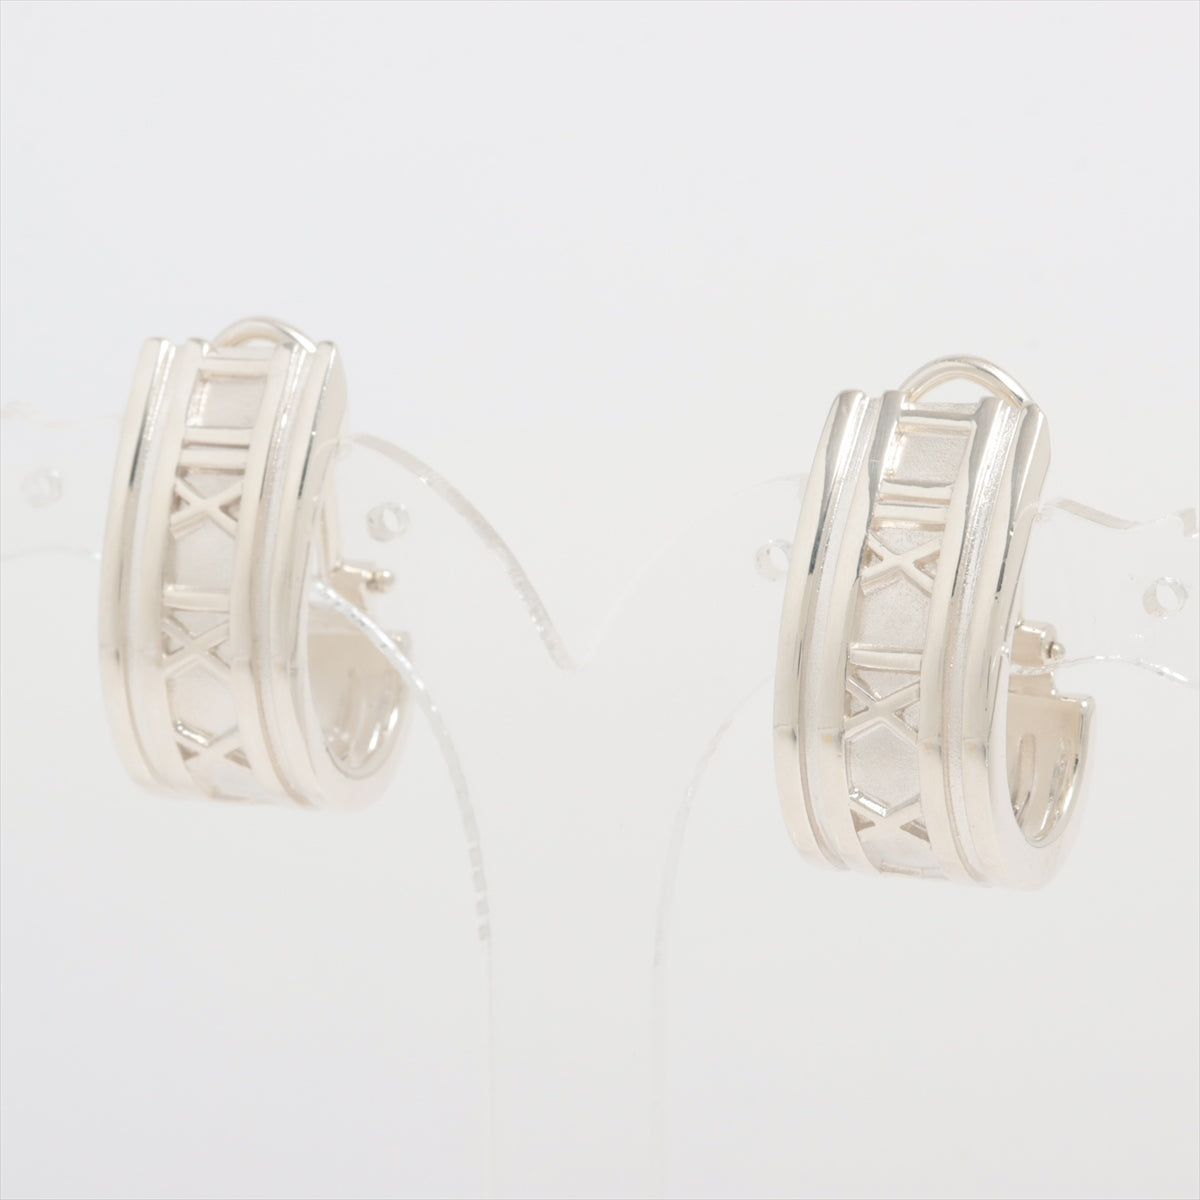 Tiffany Atlas Earrings (for both ears) 925 14.8g Silver